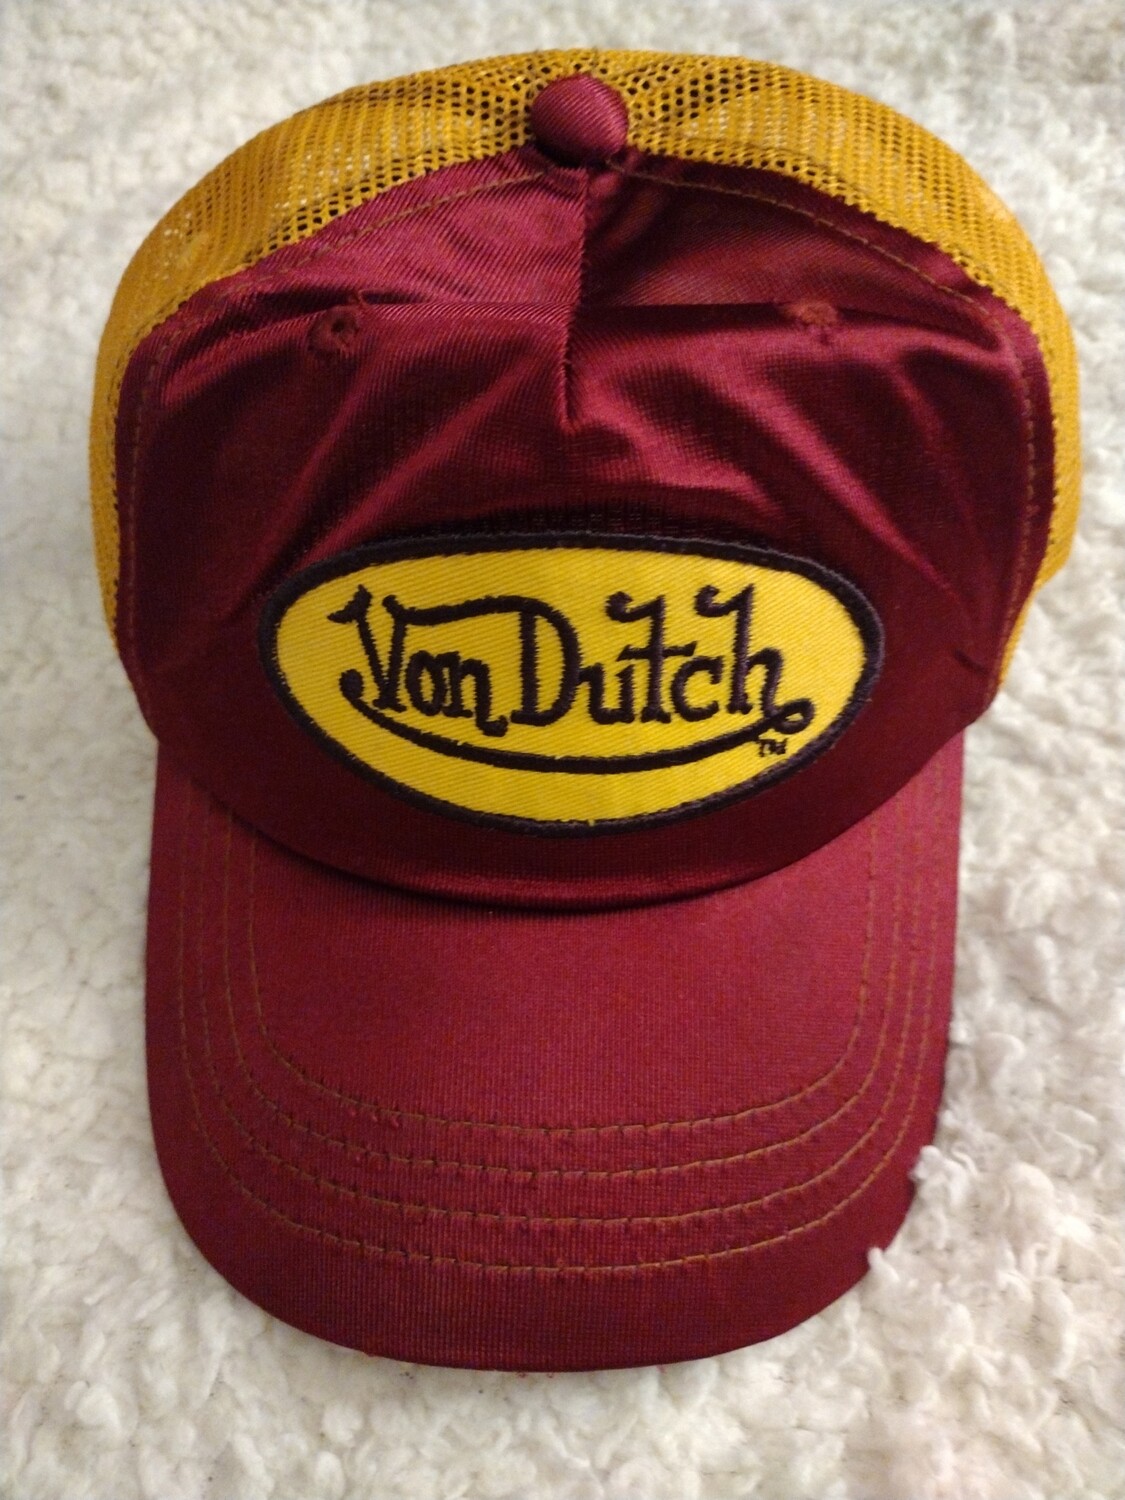 Von Dutch Cap